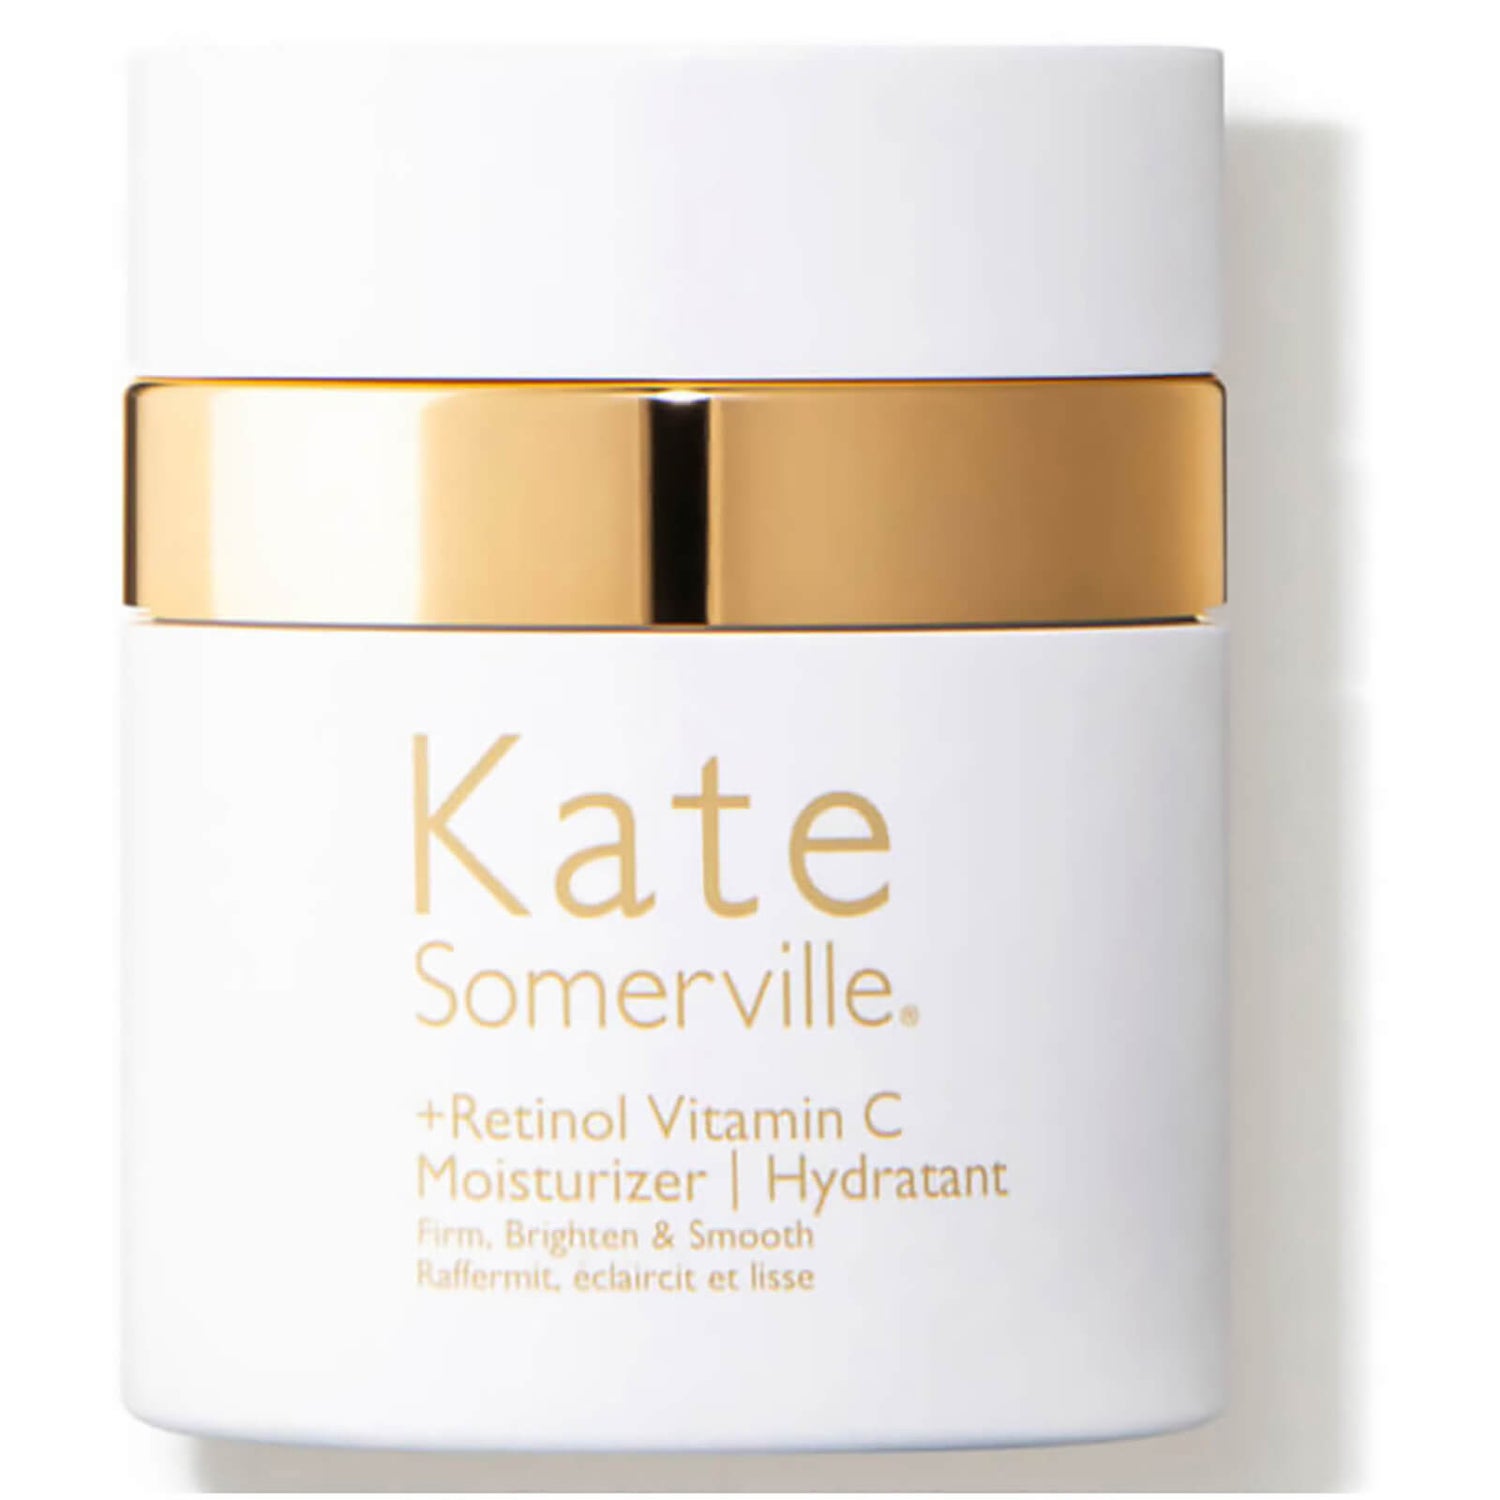 Kate Somerville Retinol Vitamin C Moisturizer (1.7 fl. oz.)